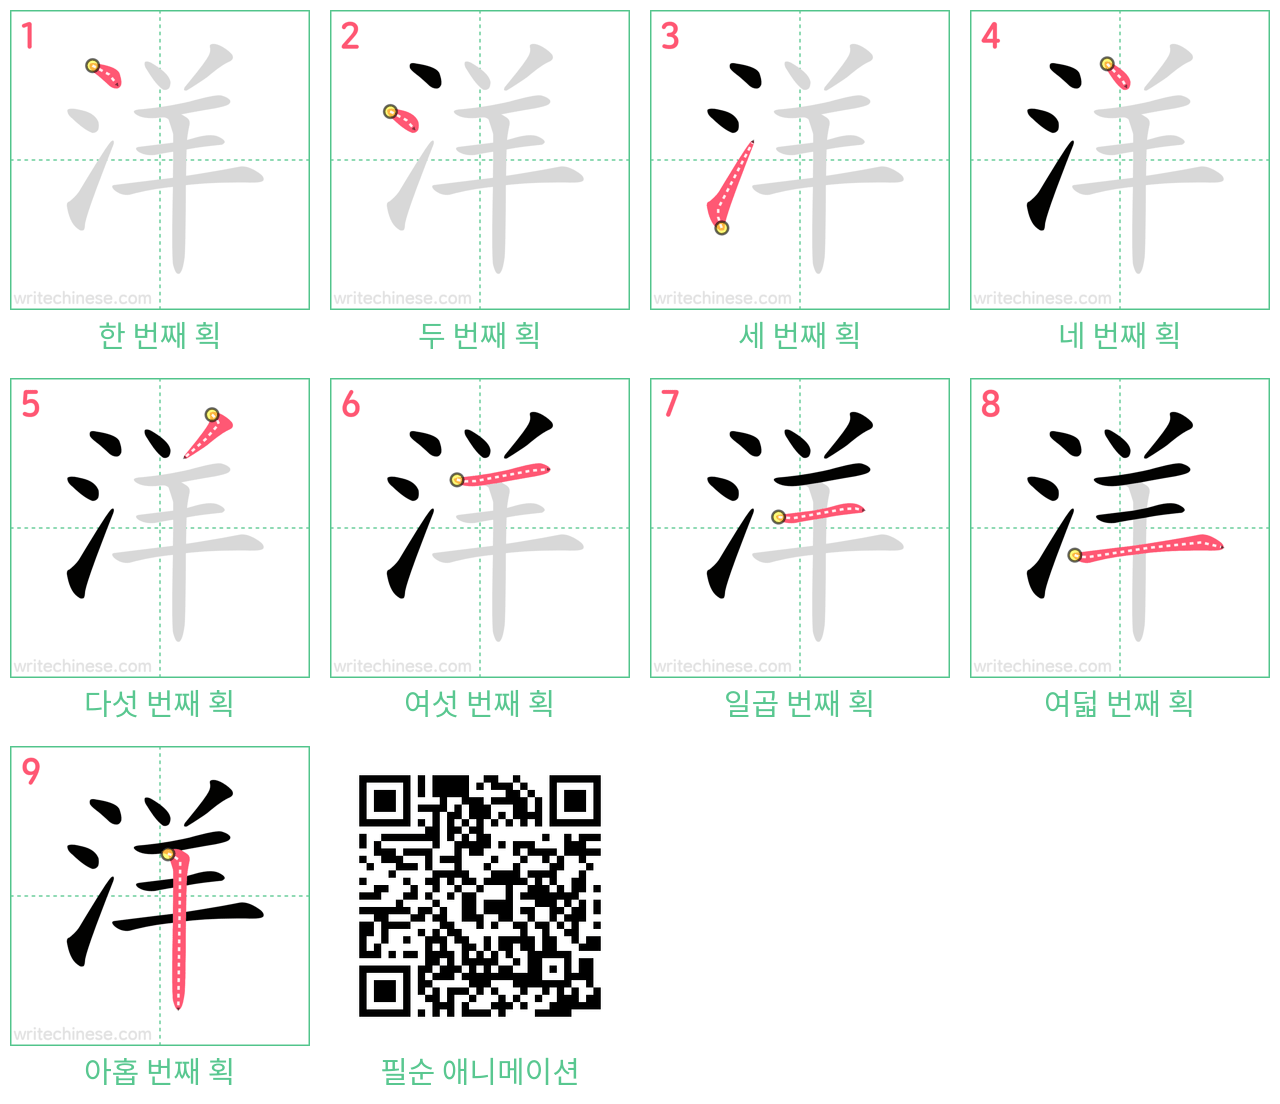 洋 step-by-step stroke order diagrams